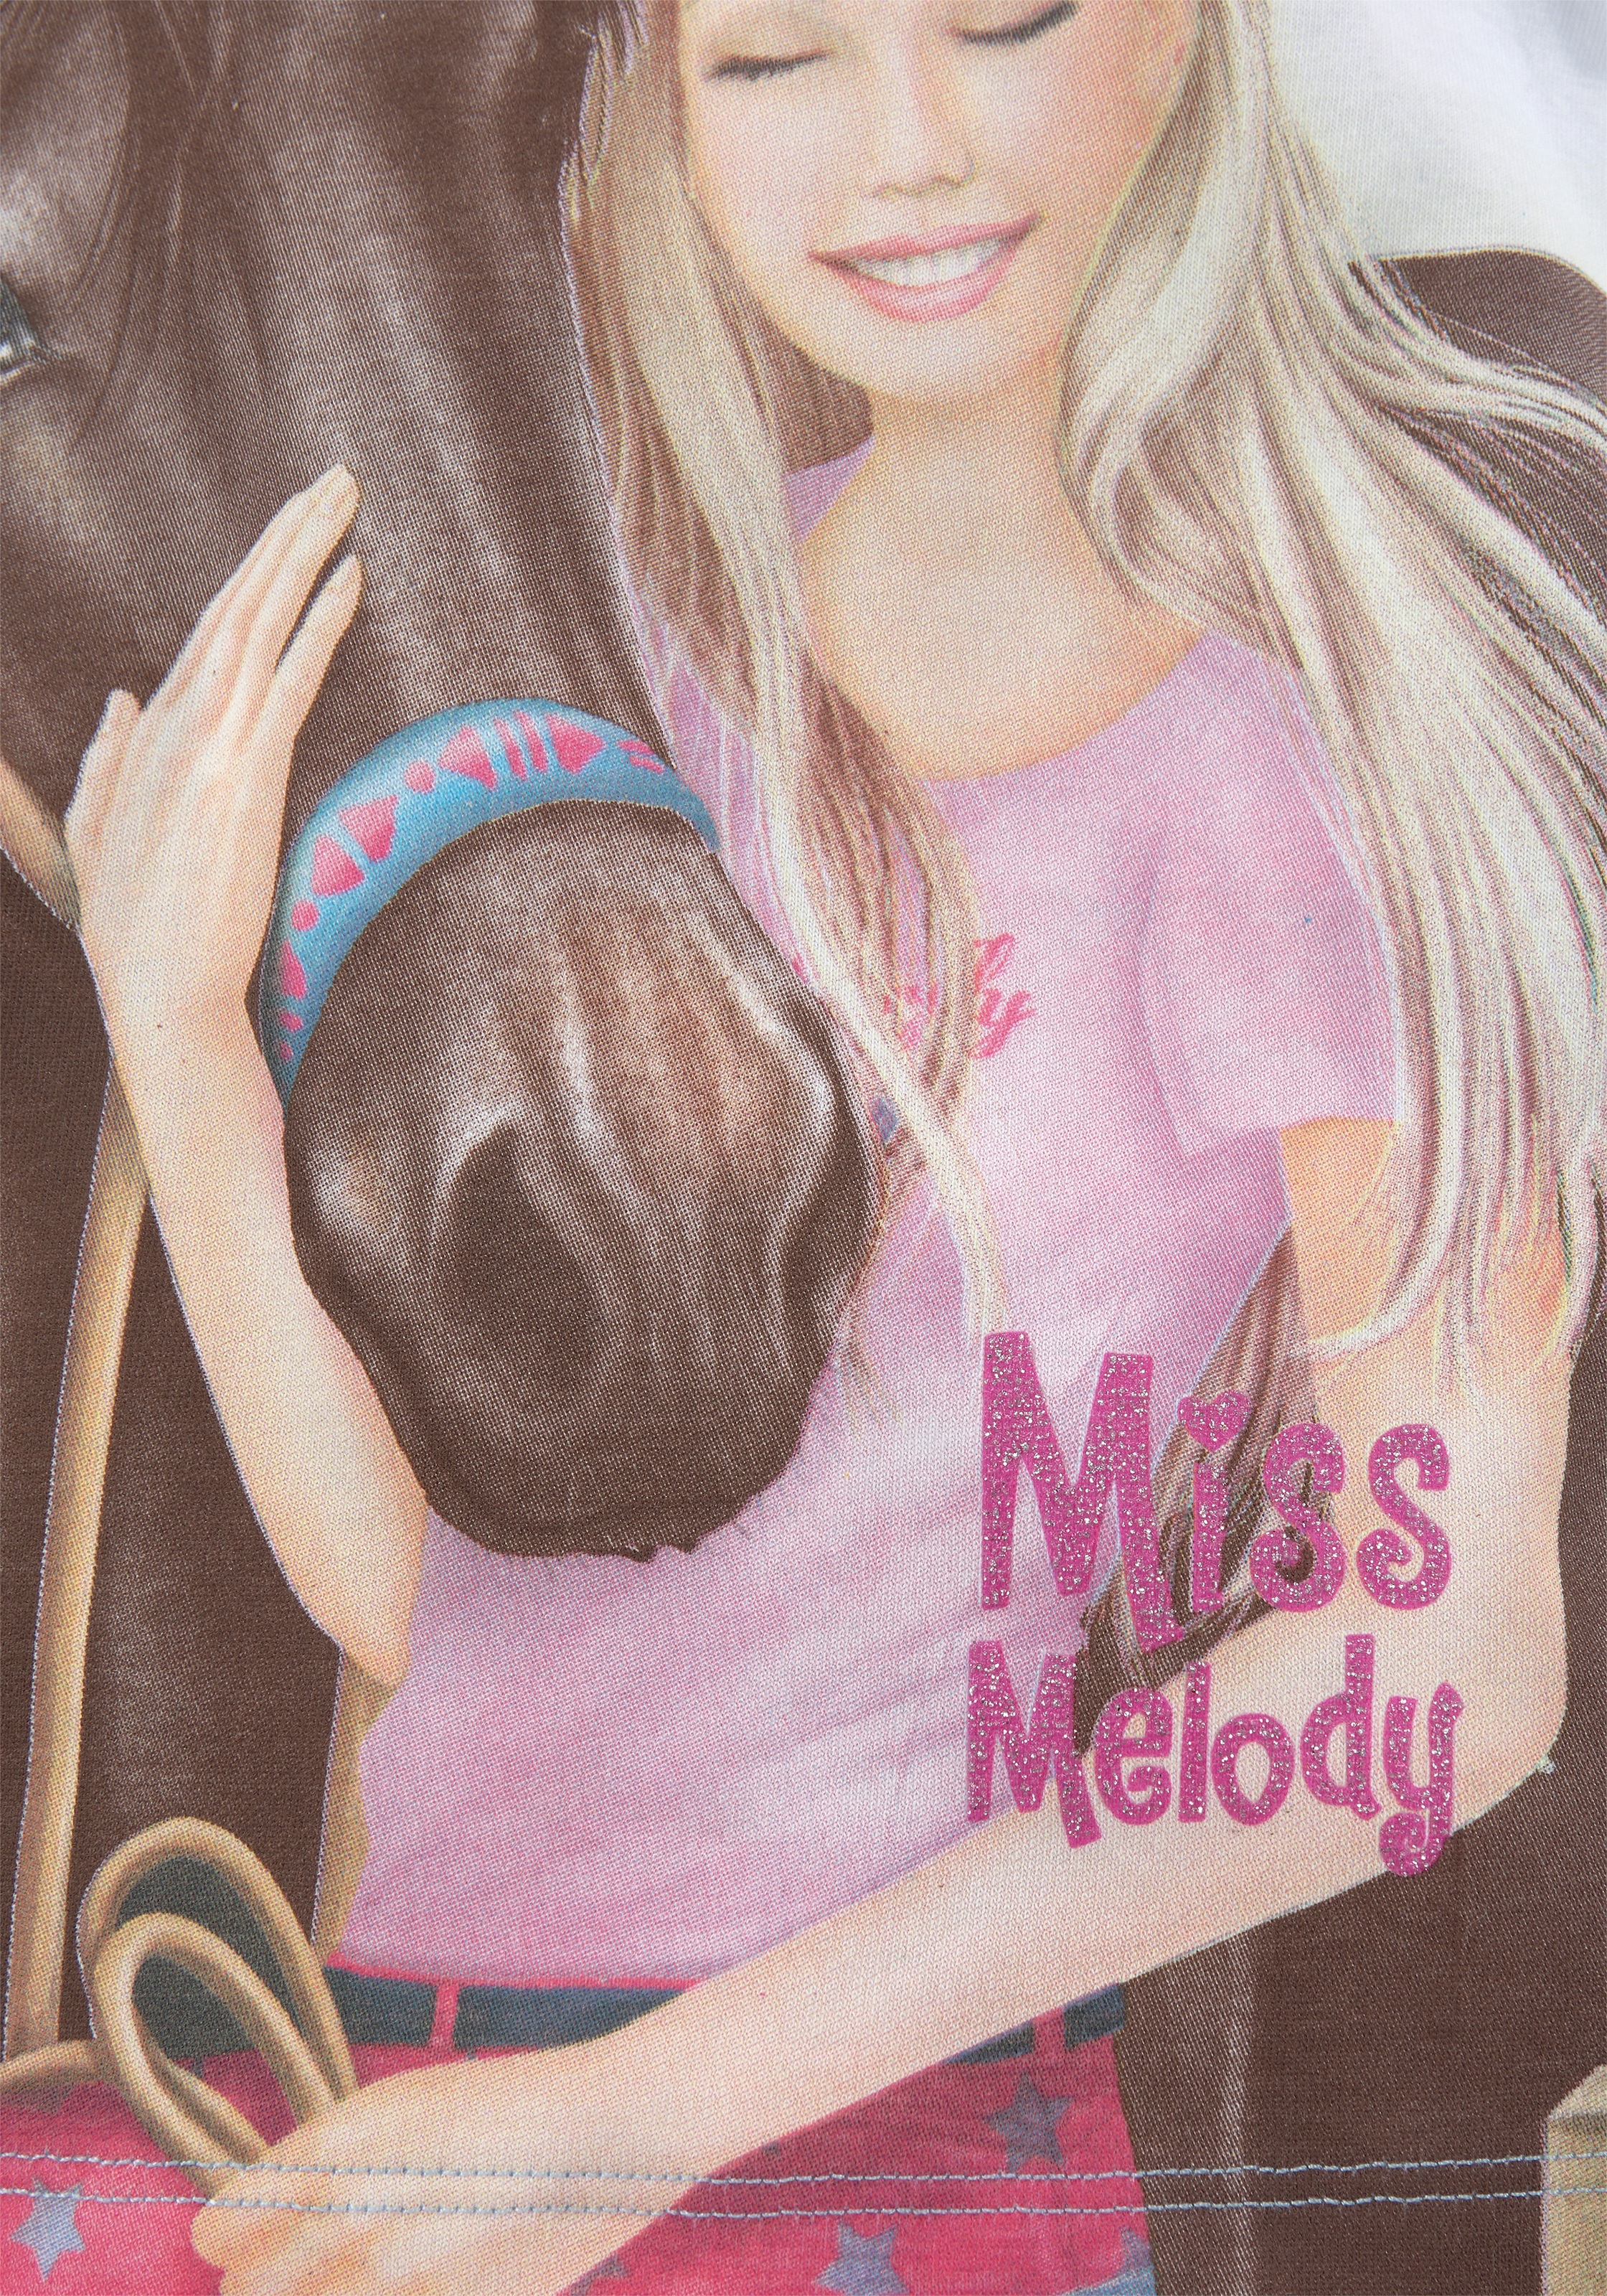 Miss Melody T-Shirt, mit schönem Pferdemotiv online bei OTTO